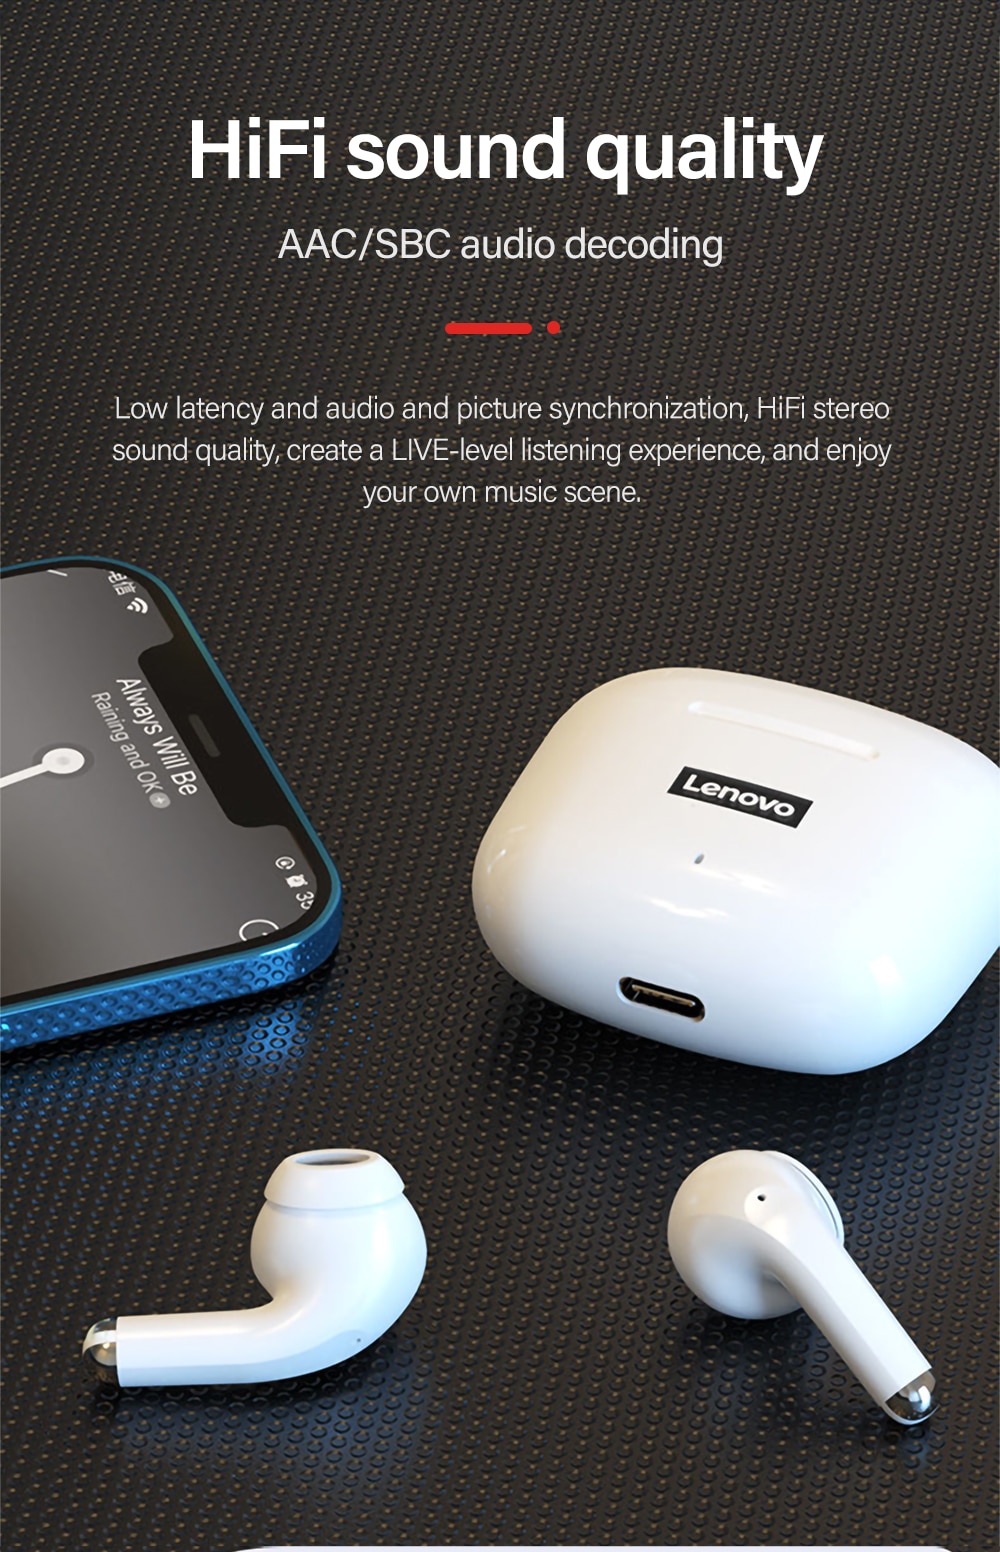 15454-4ebnrh Lenovo-LP40 Pro TWS Auriculares Inalámbricos, Cascos Deportivos con Bluetooth 5.1, Reducción de Ruido, Control Táctil, Batería de 250 mAh, Originales, Novedad de 2022